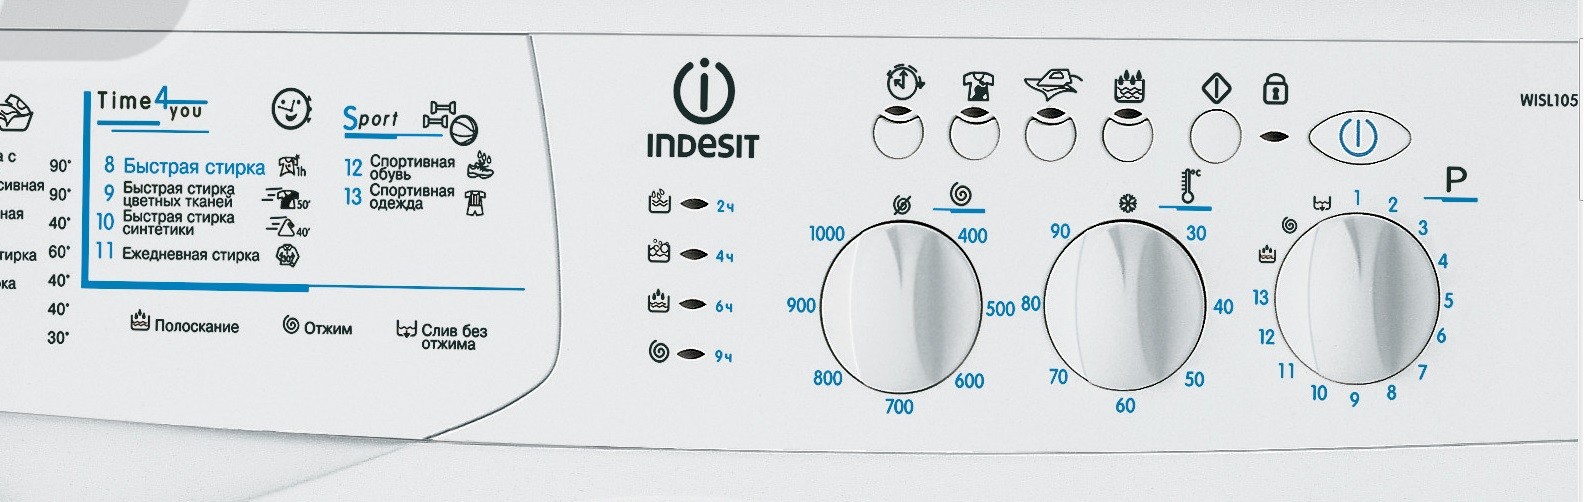 control panel Indesit WISL 105